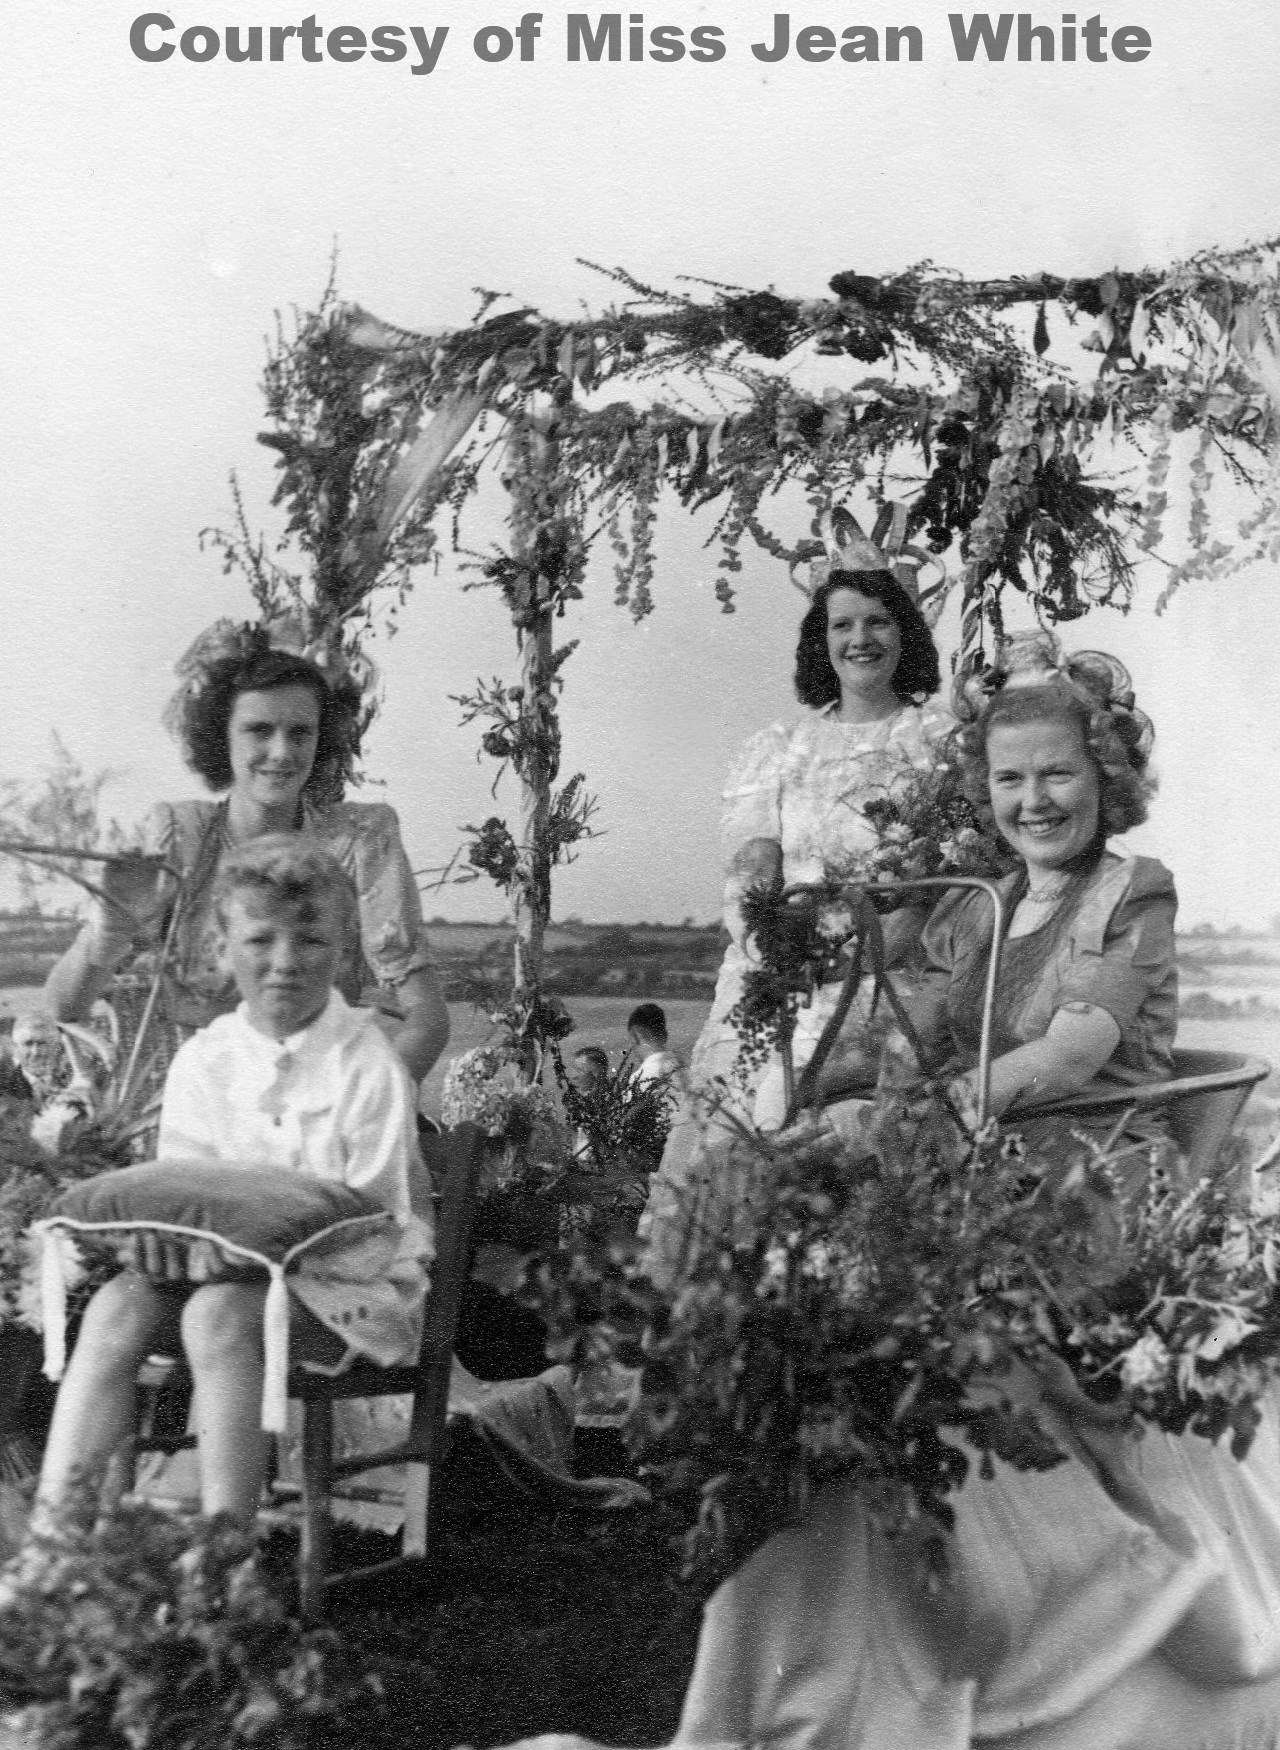 Goonhavern Carnival Queen 1949